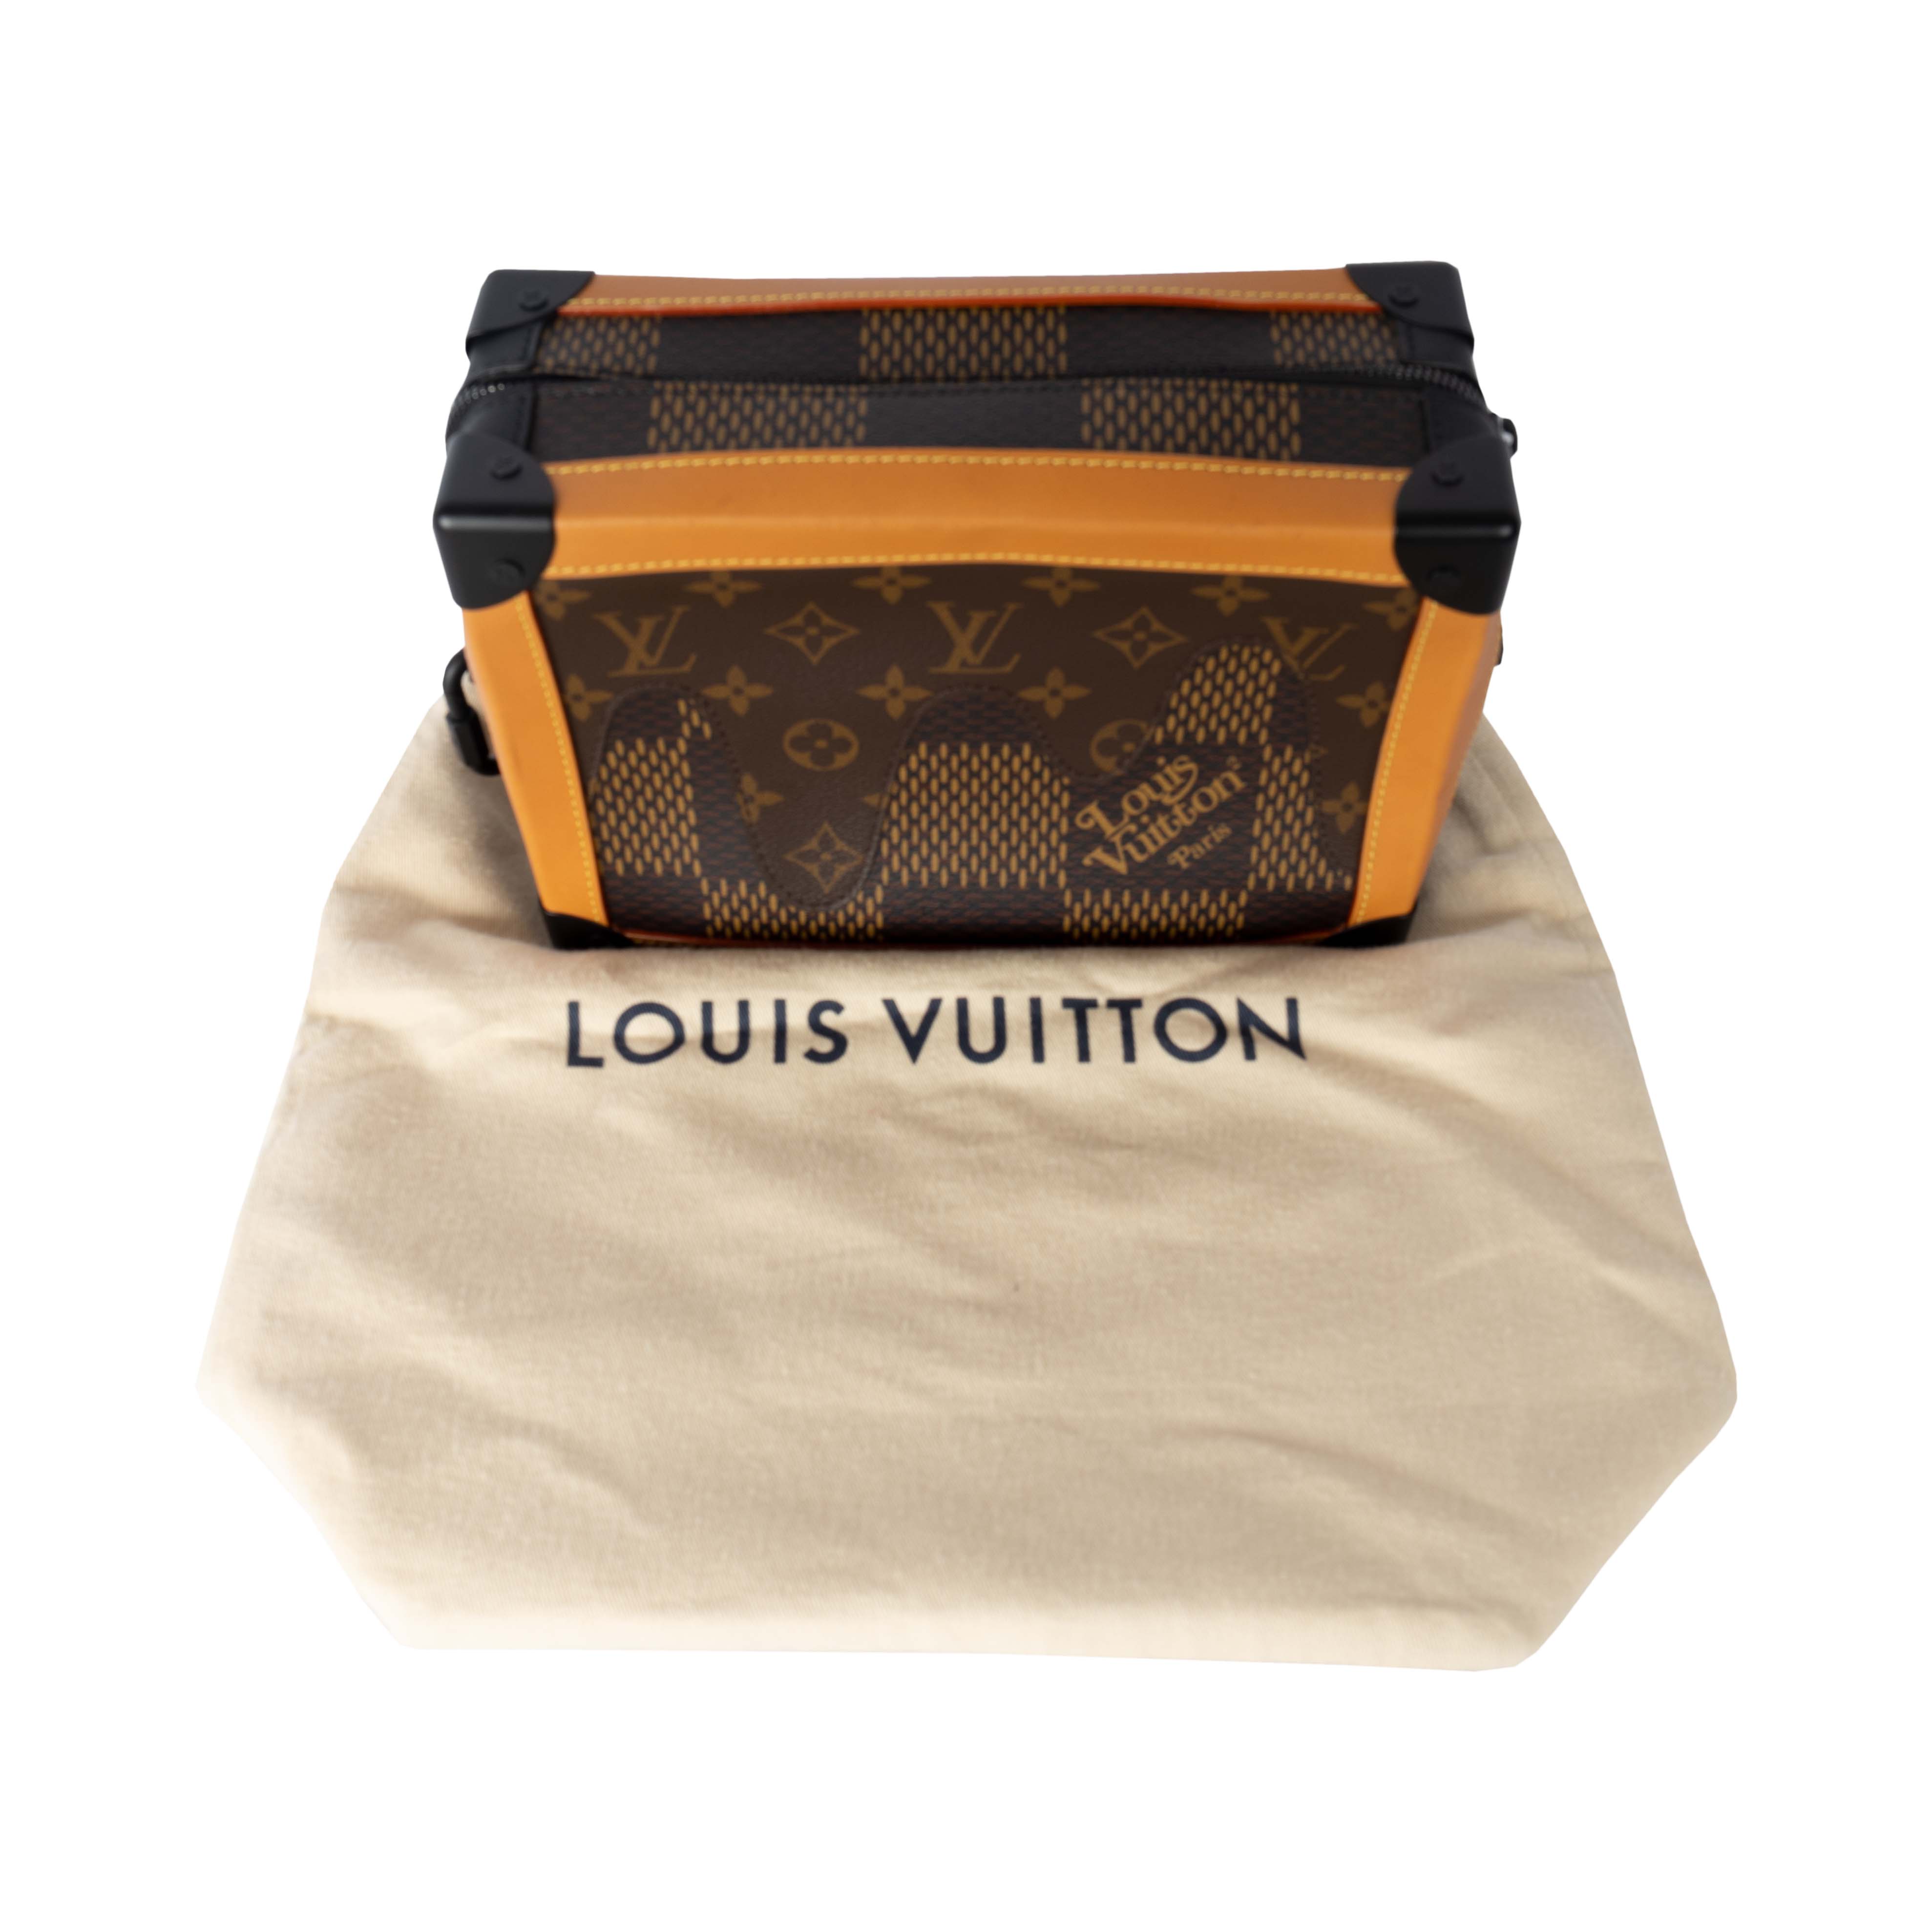 Louis Vuitton x Nigo